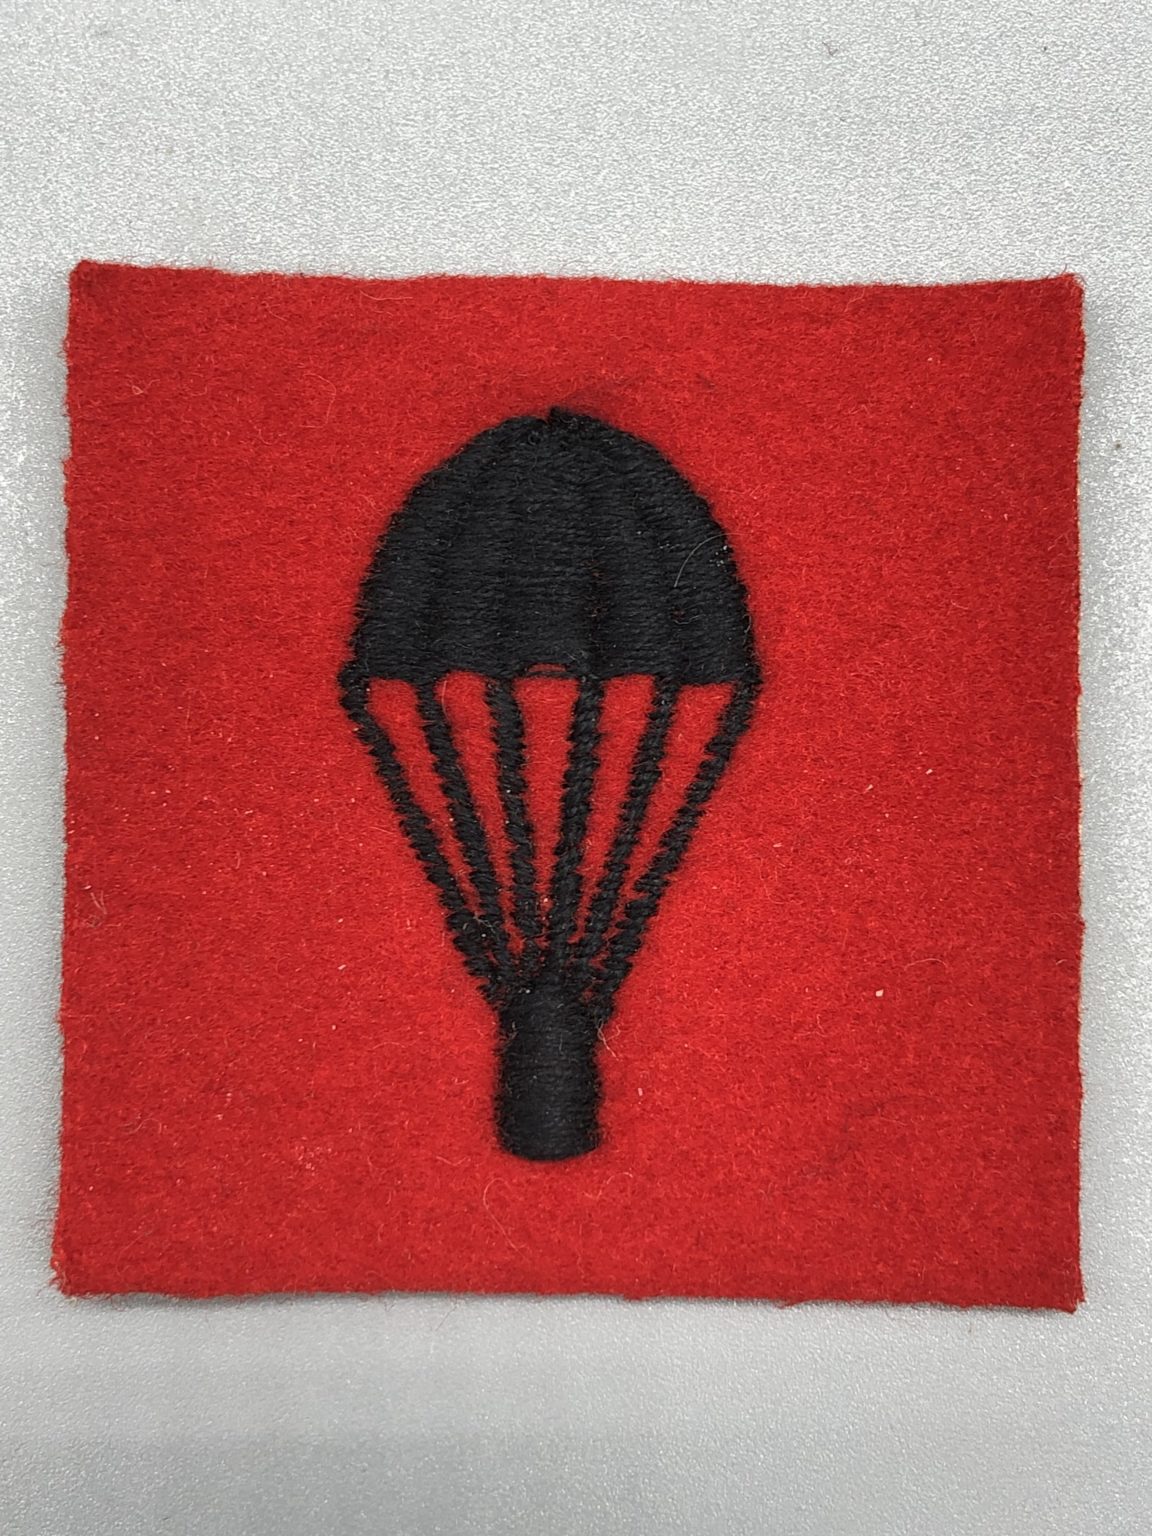 British Parachutist Badge I British Airborne & Special Forces Insignia